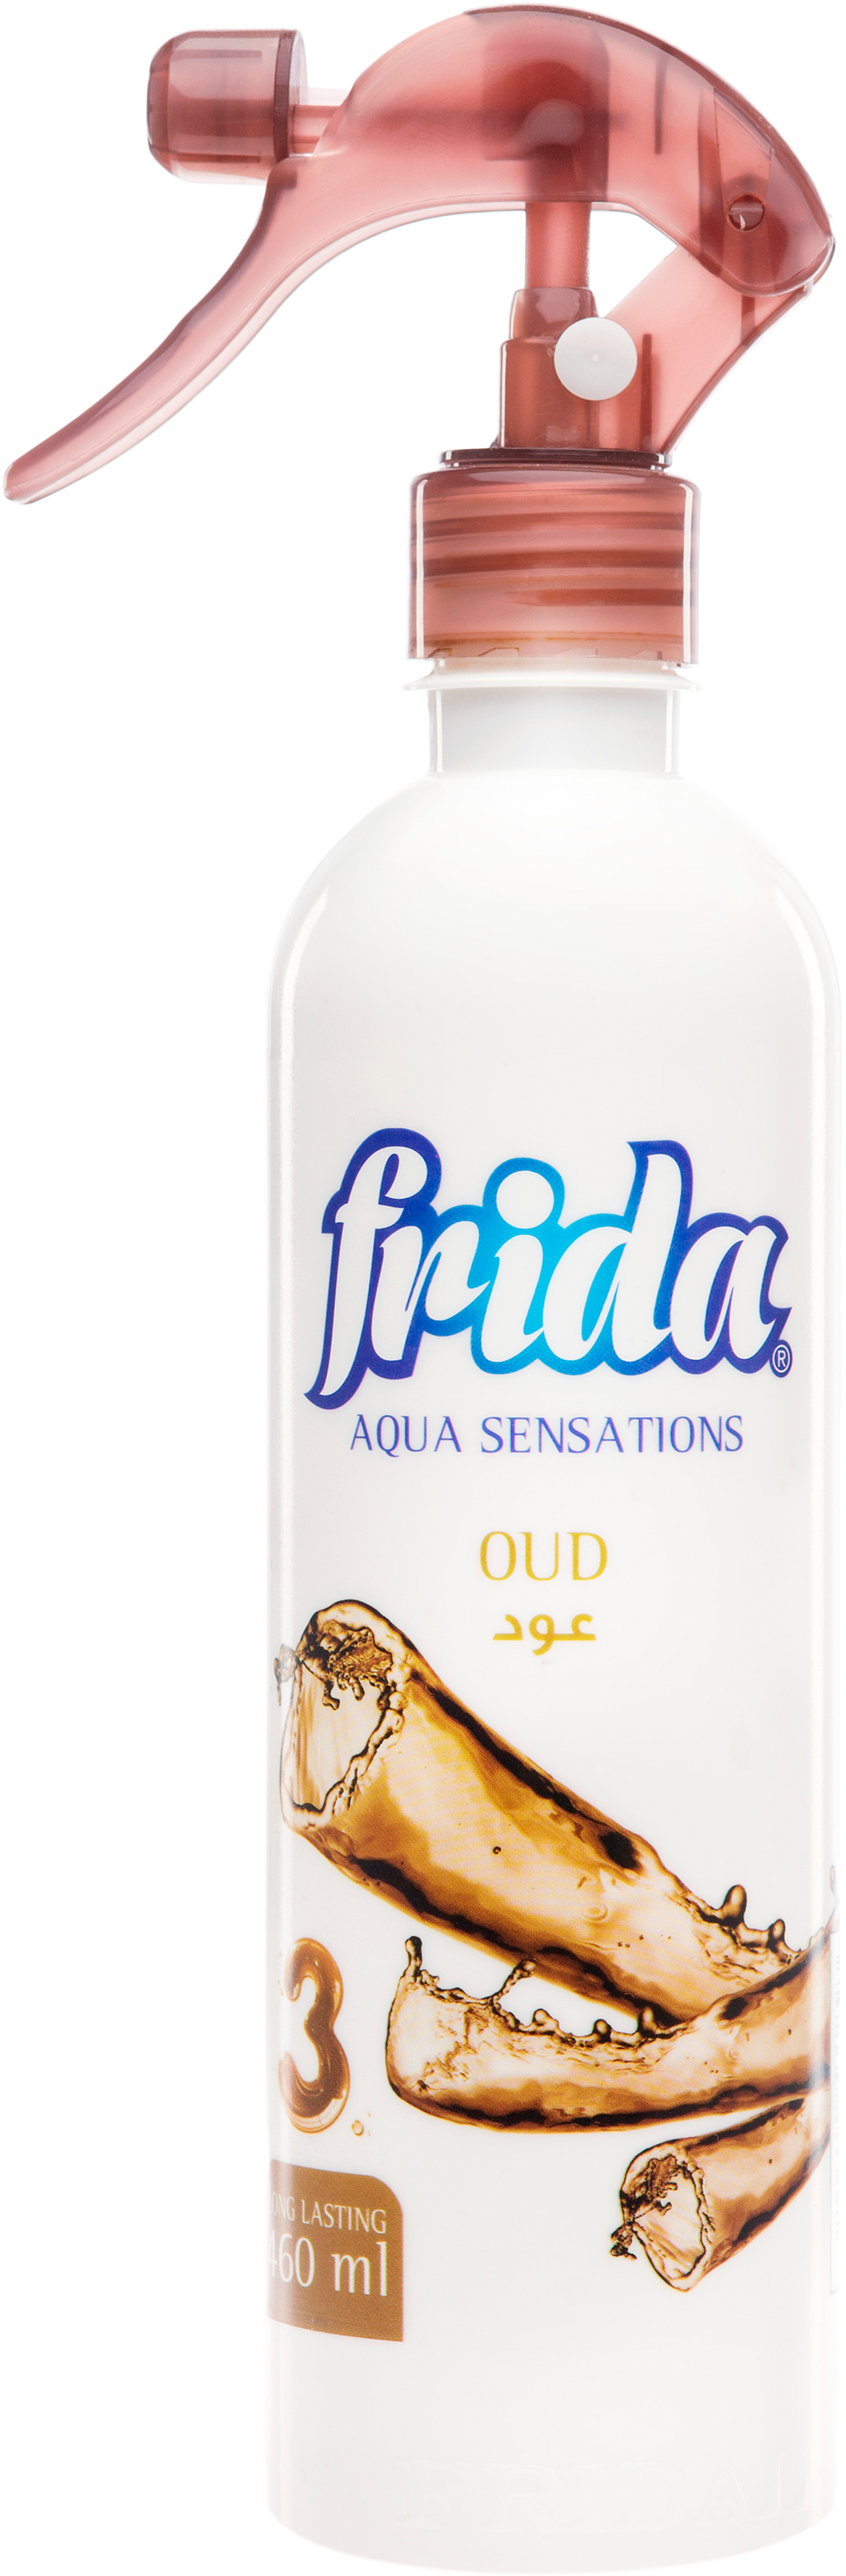 Frida Aqua Sensations "Oud"